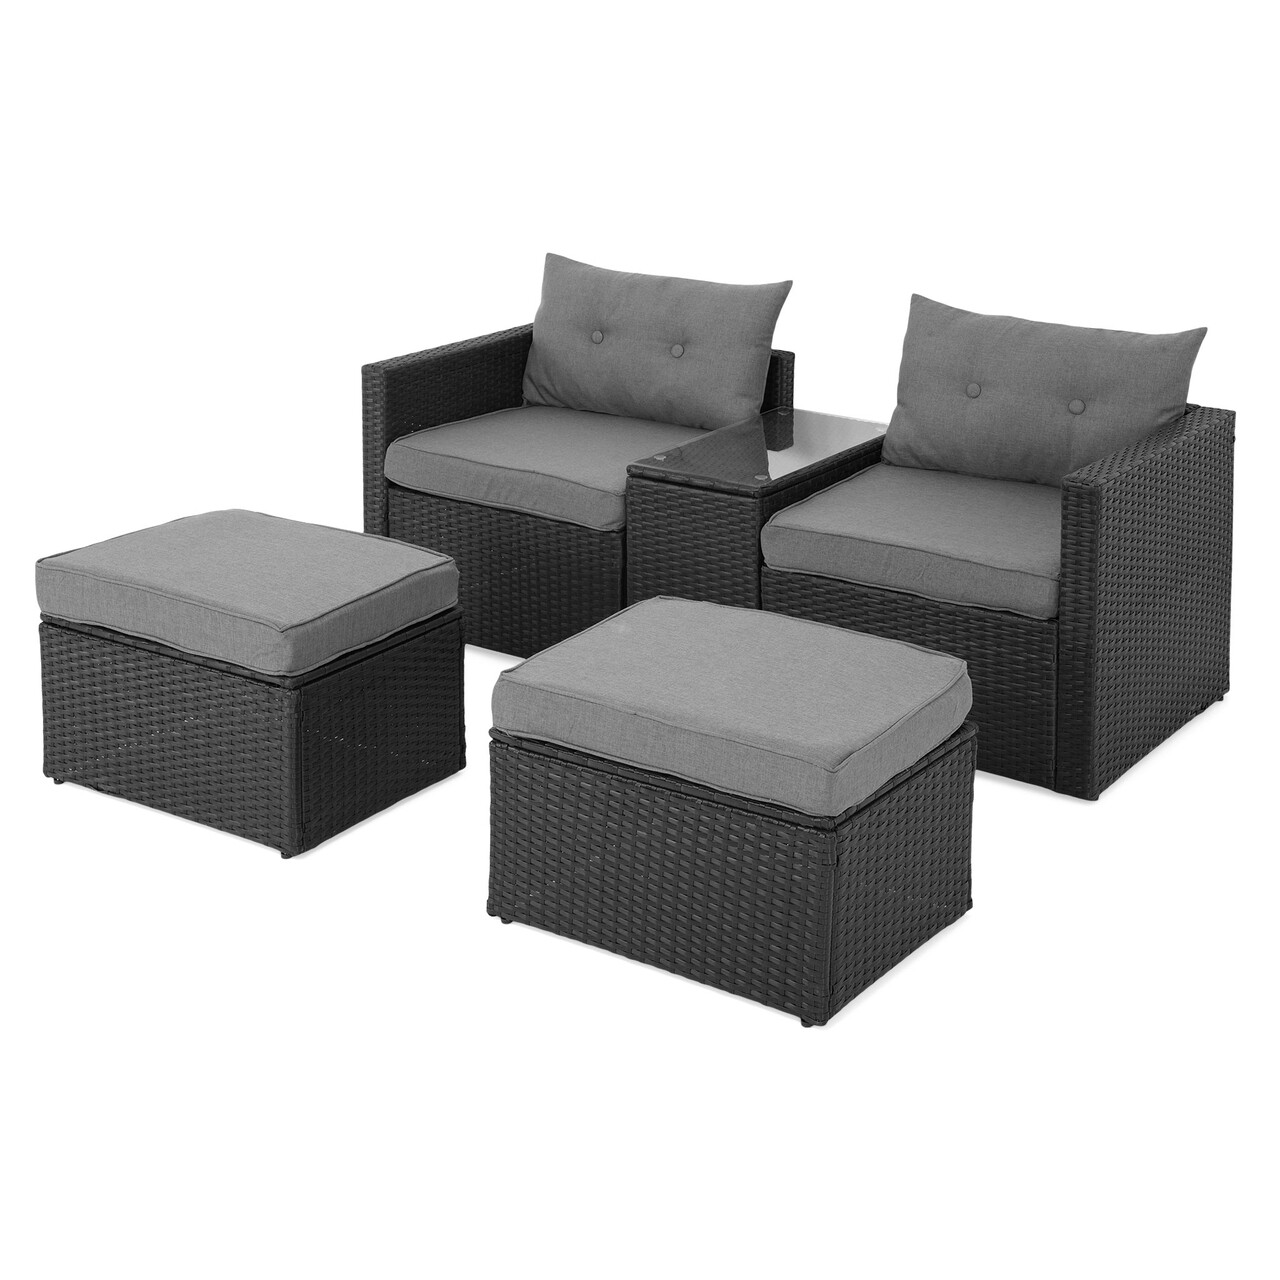 Maison Marti Kerti/terasz bútor szett, 2 db fotel + 2 zsámoly  + asztalka, acél, szürke/fekete